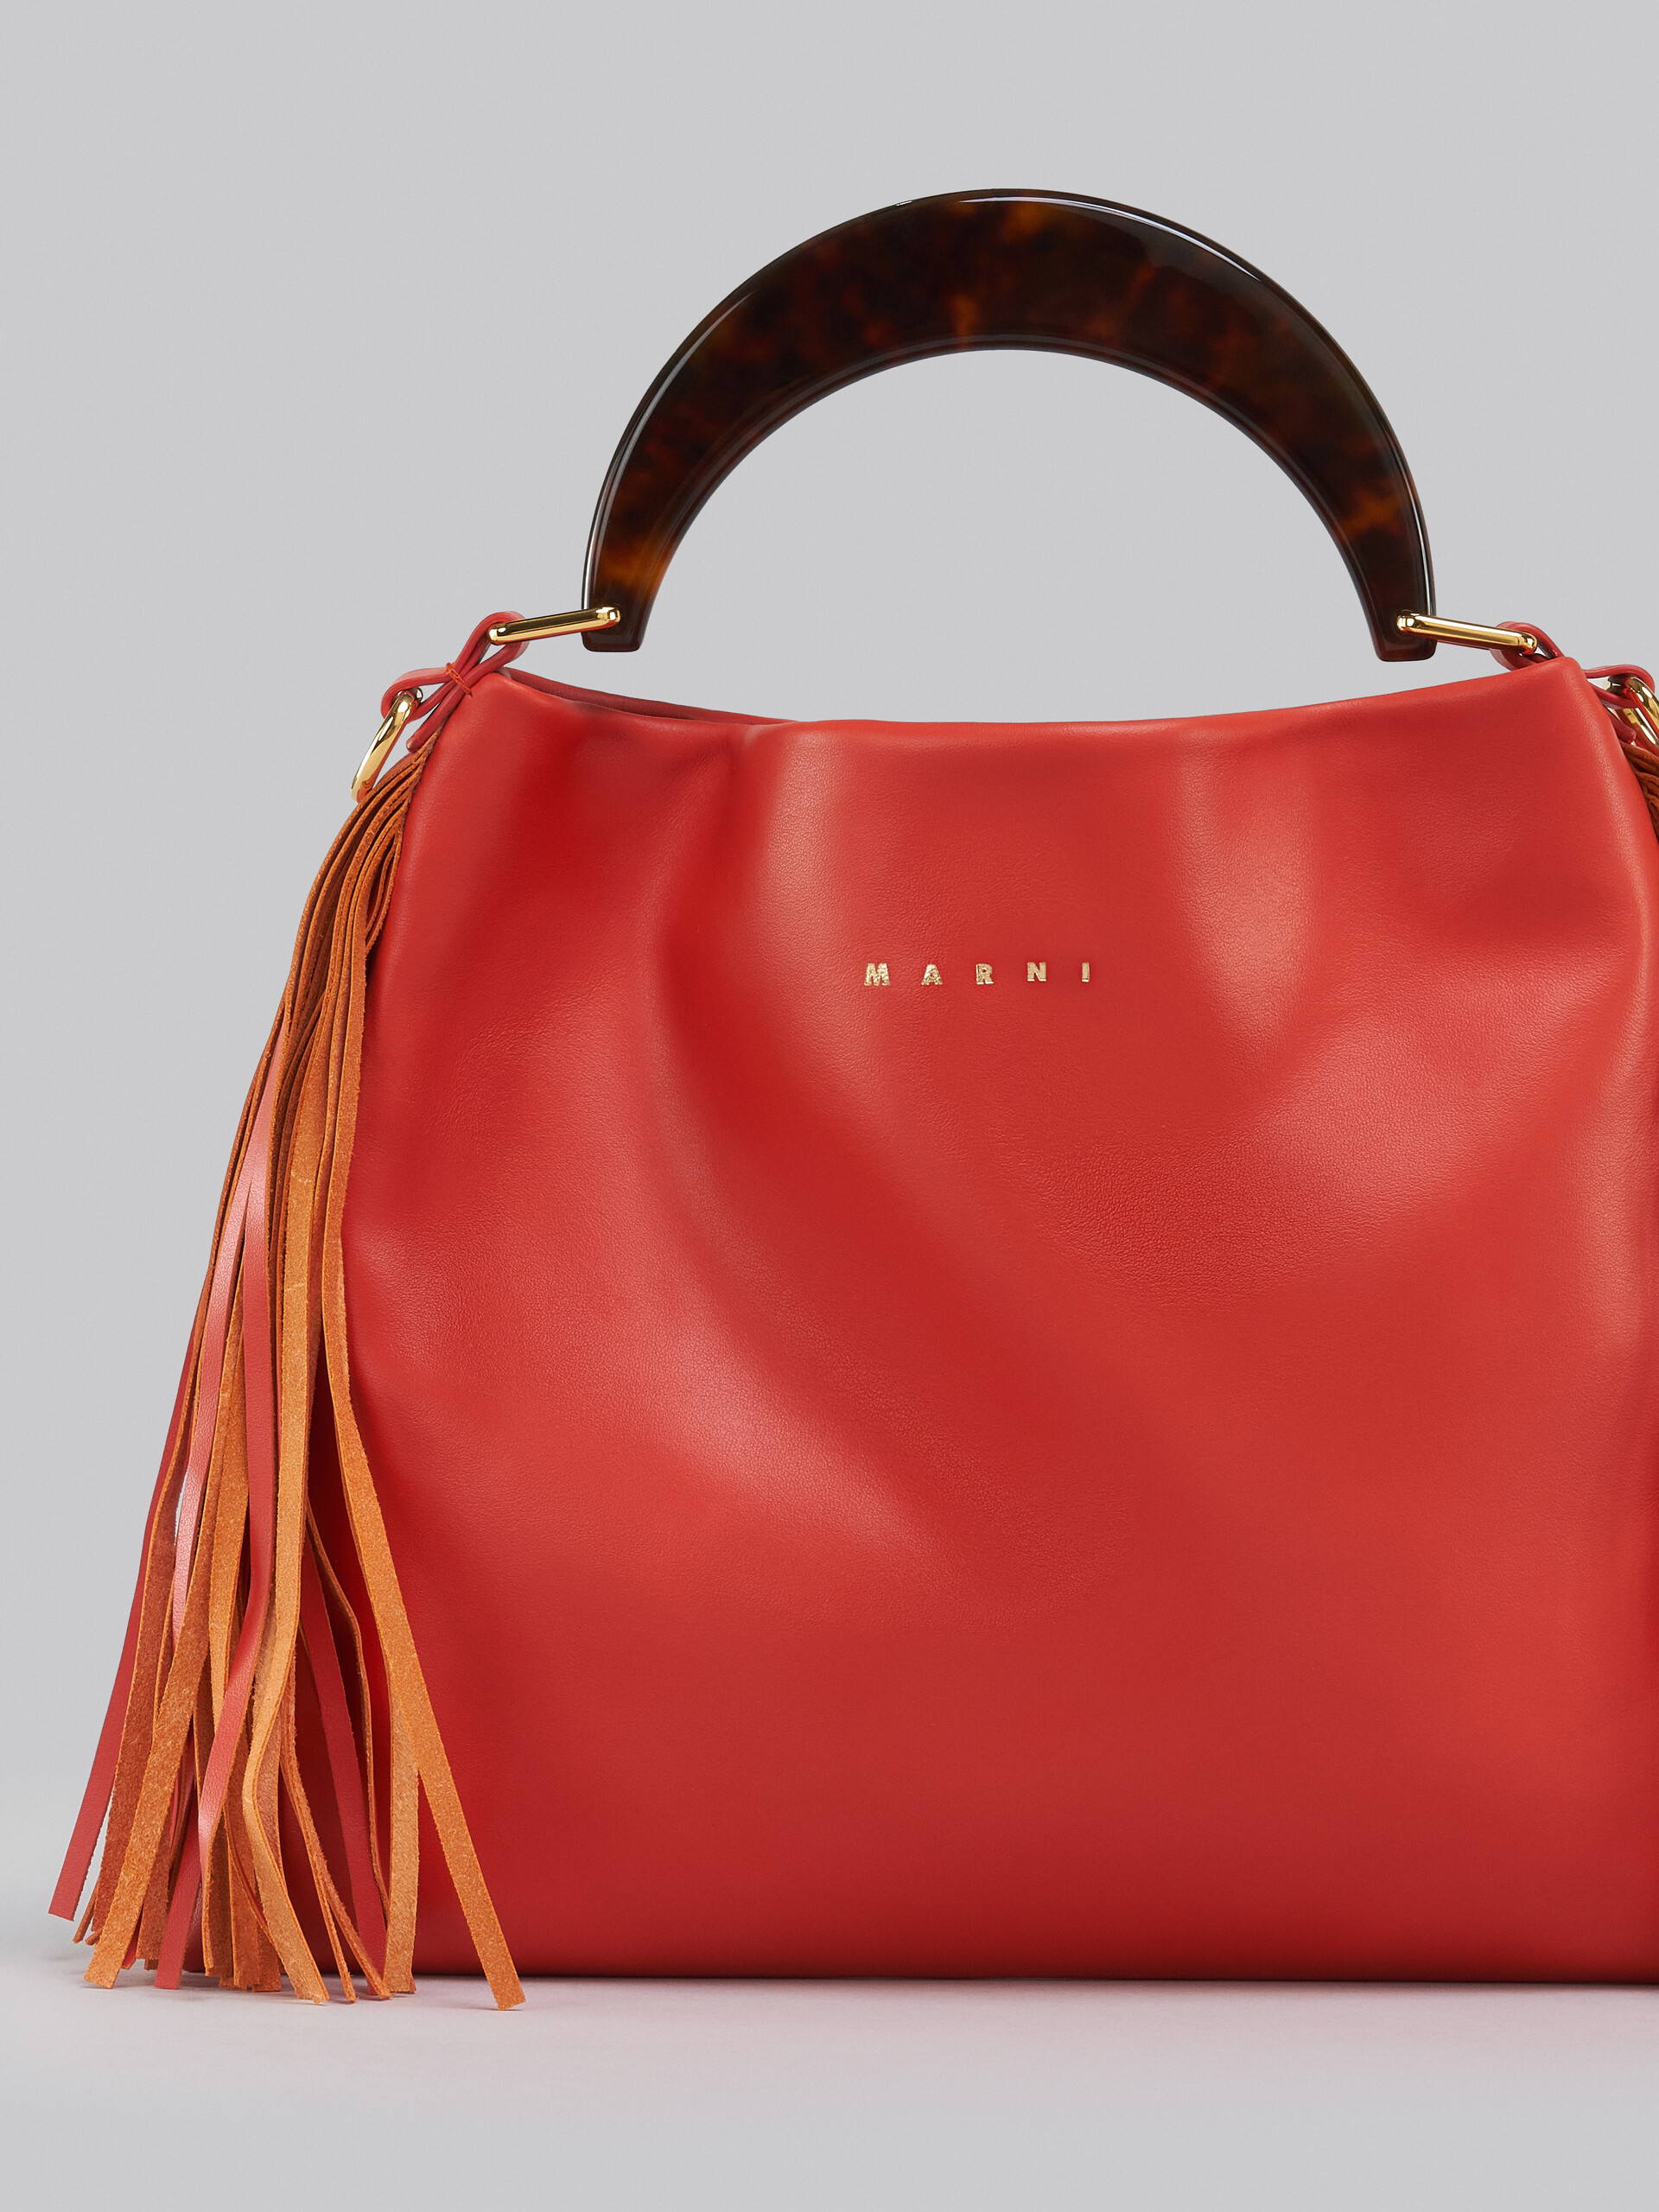 Venice Small Bag in orange leather with fringes - Shoulder Bag - Image 5